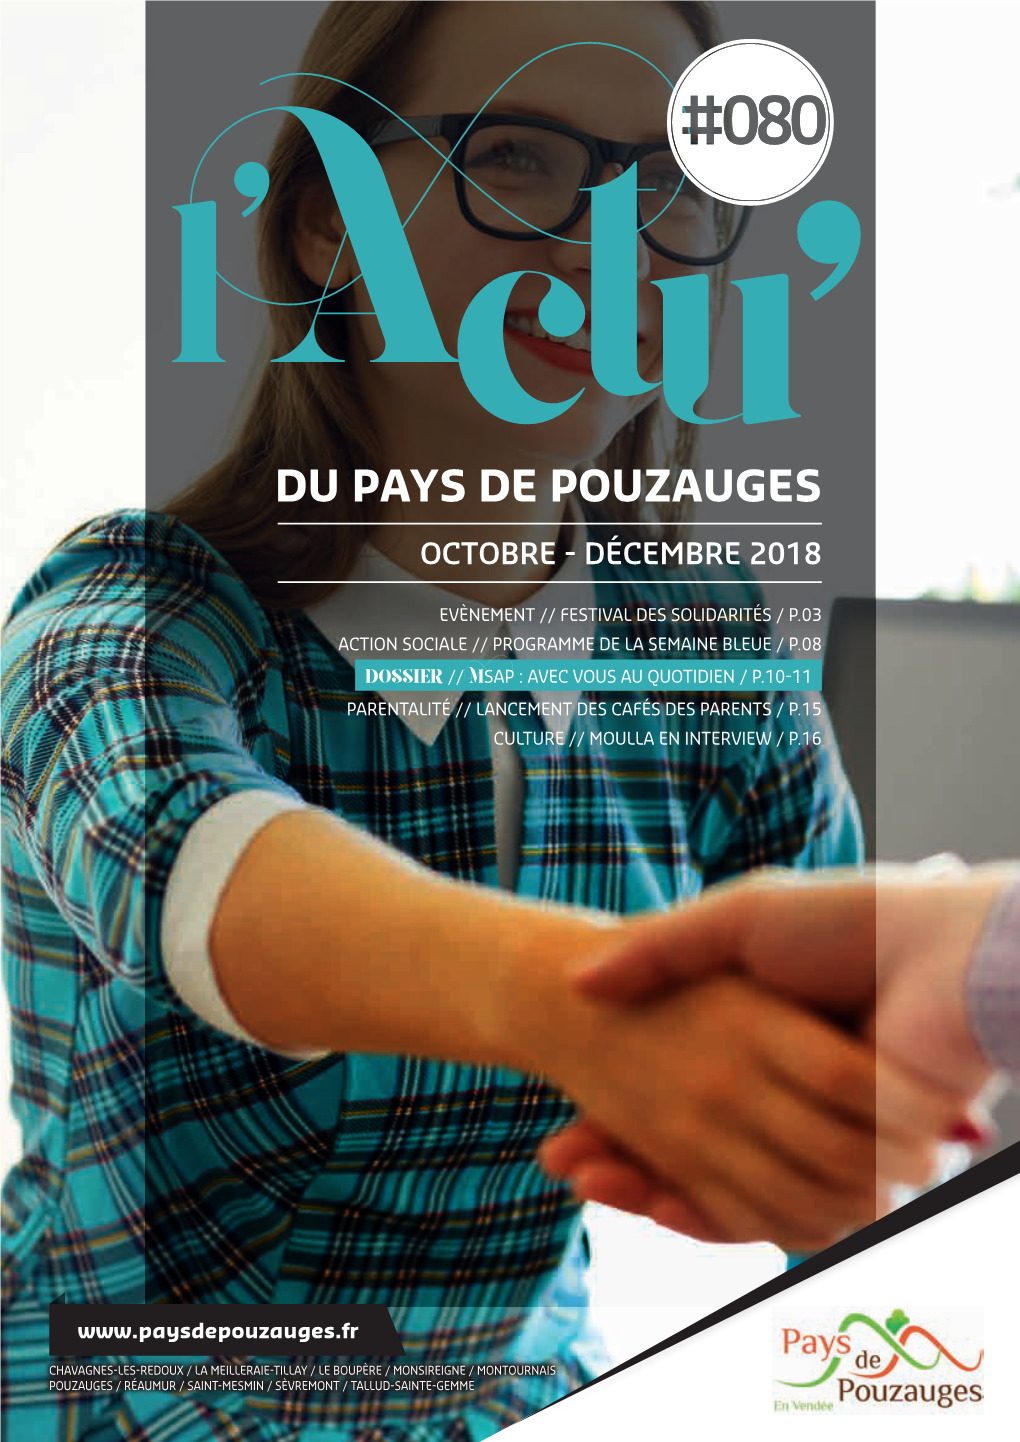 DU PAYS DE POUZAUGES L OCTOBRE - DÉCEMBRE 2018